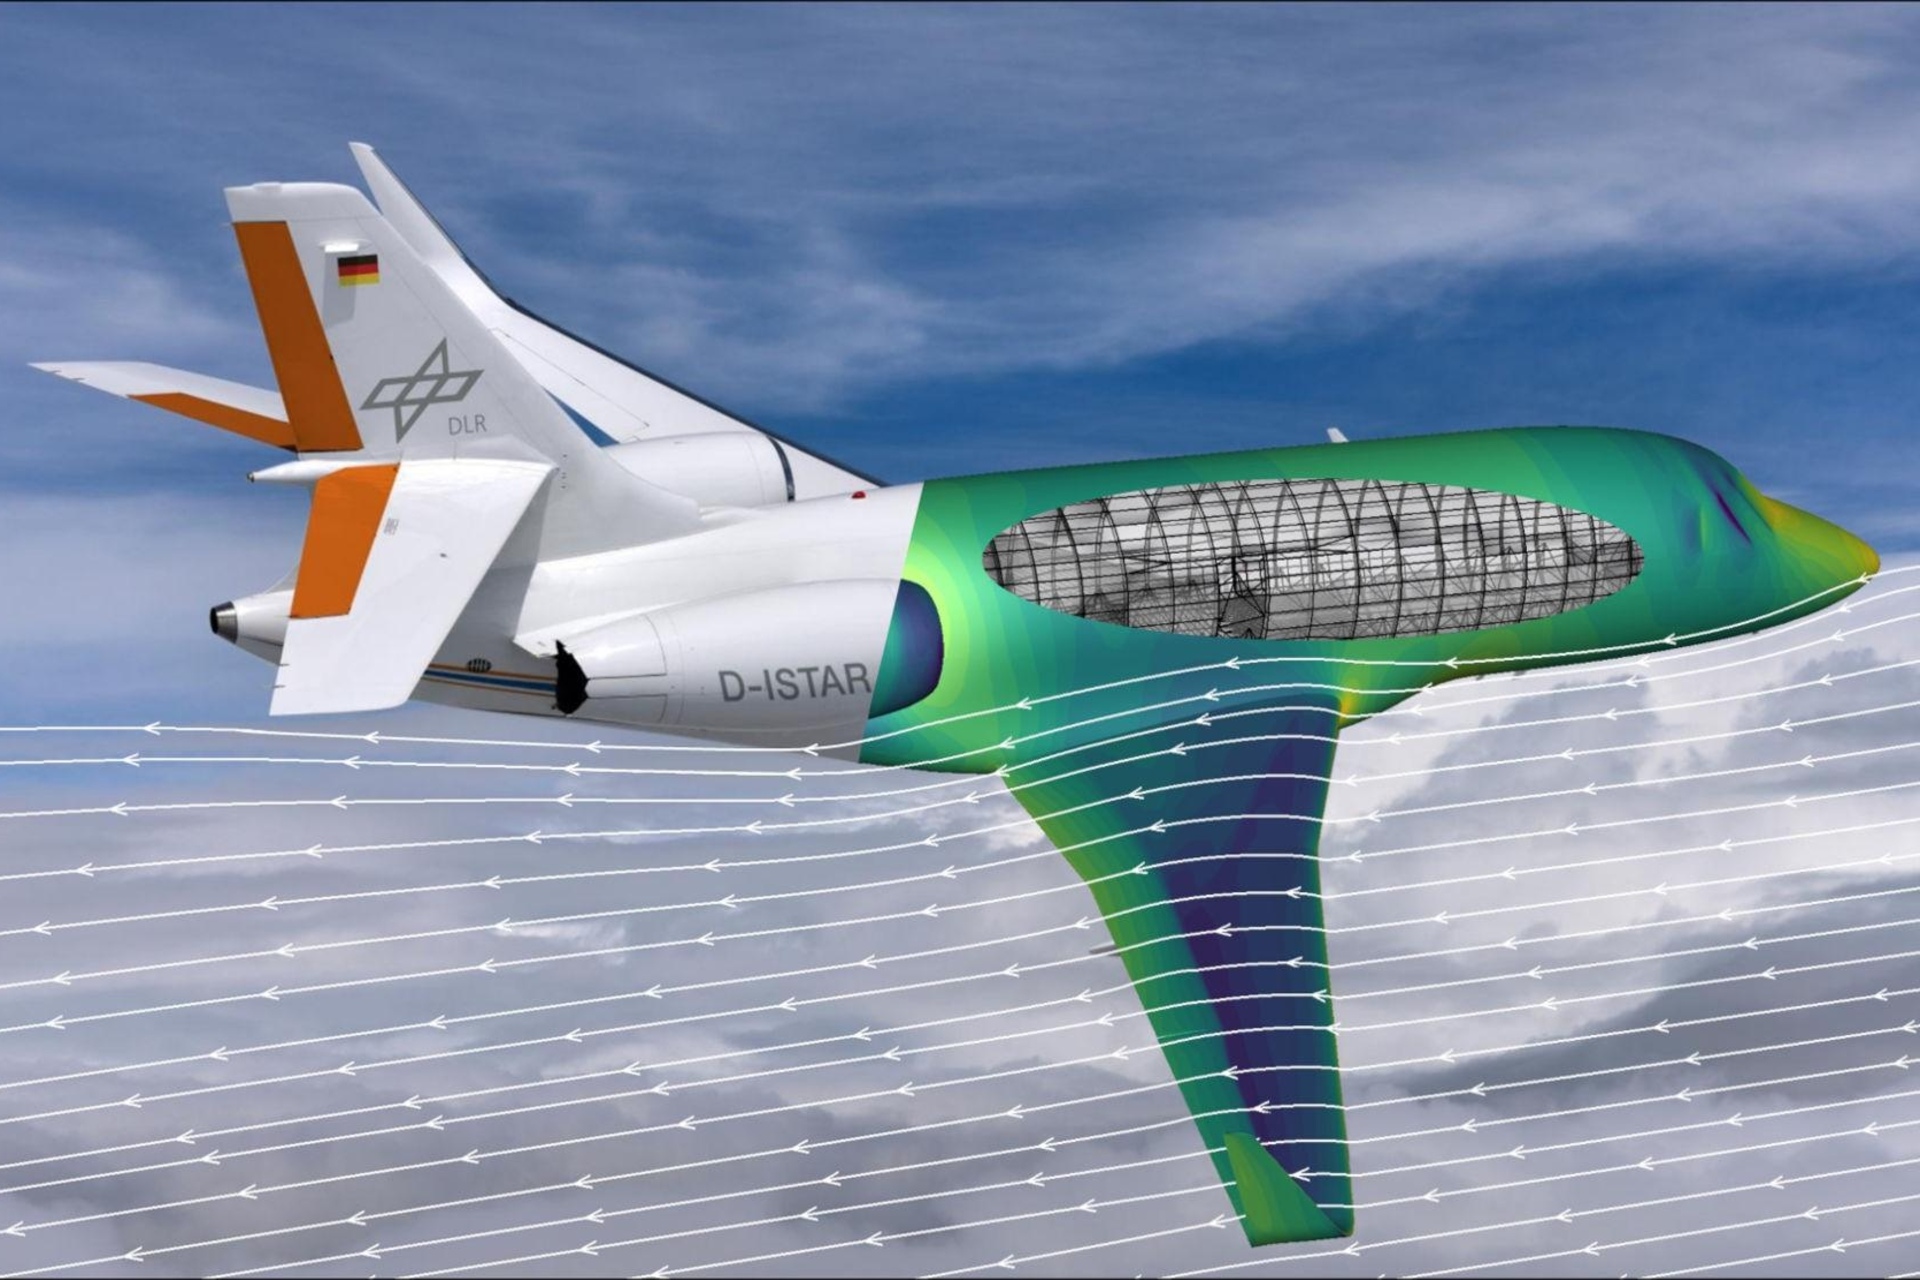 CFD: Aerodünaamiliste voogude, arvutusliku vedeliku dünaamika või CFD arvutipõhine simulatsioon on järgmise põlvkonna lennukite väljatöötamise aluseks: DLR-i uurimislennukit ISTAR näidatakse lõiguga, mis on visualiseeritud läbiviidud voolusimulatsiooni värvigradienti abil. Airbusi, DLRi ja ONERA välja töötatud uue tarkvaraga